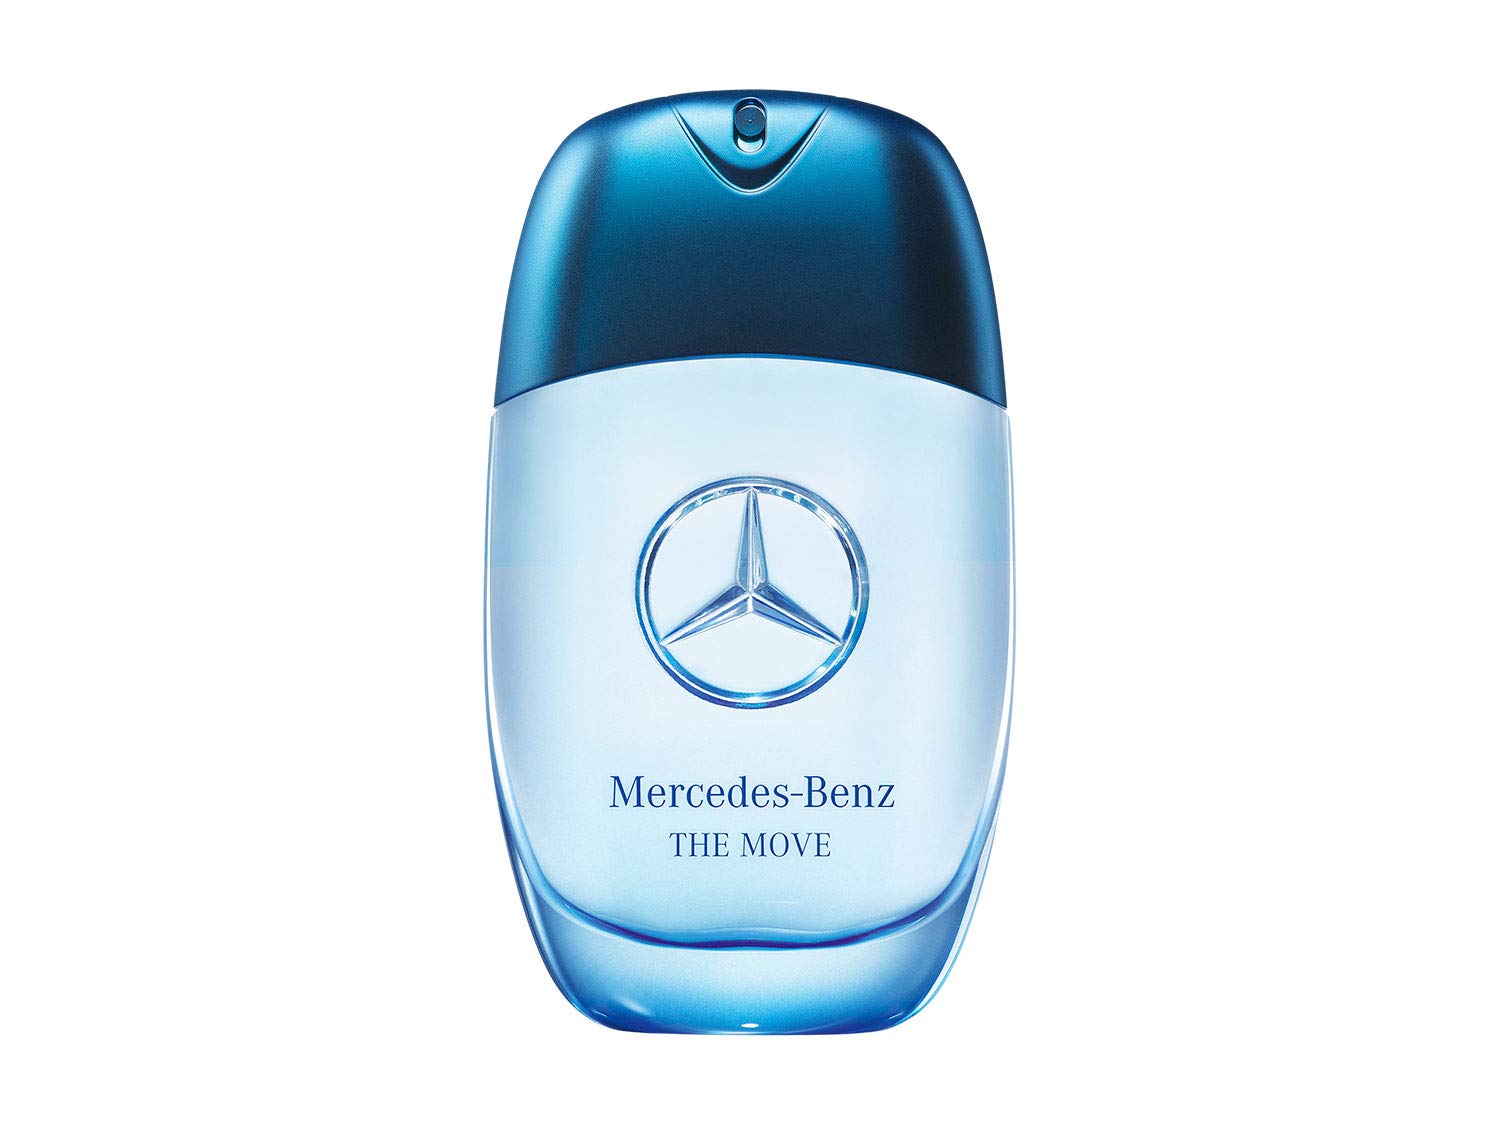 Mercedes Benz The Move Eau De Toilette Spray for Men, 3.4 Oz